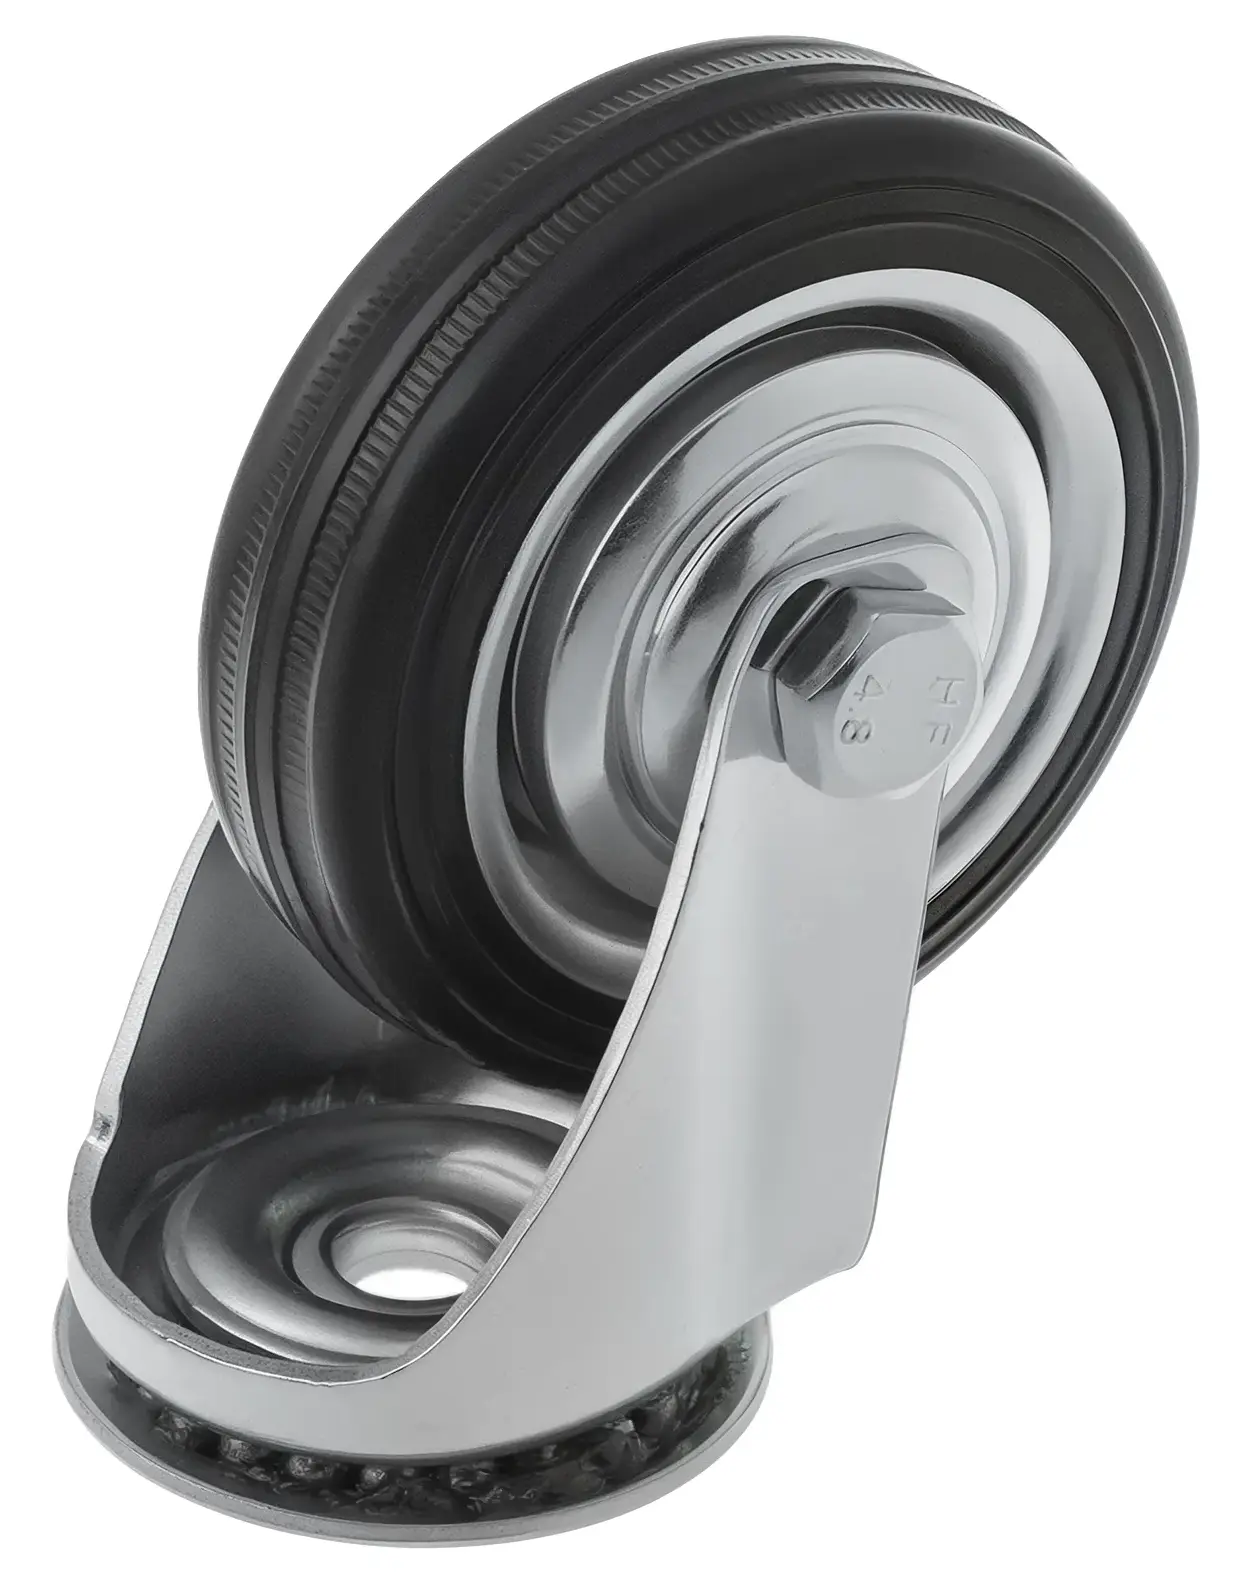 Промышленное колесо, диаметр 75мм, крепление под болт 10,5мм, поворотное, черная резина, роликовый подшипник - SCh 93